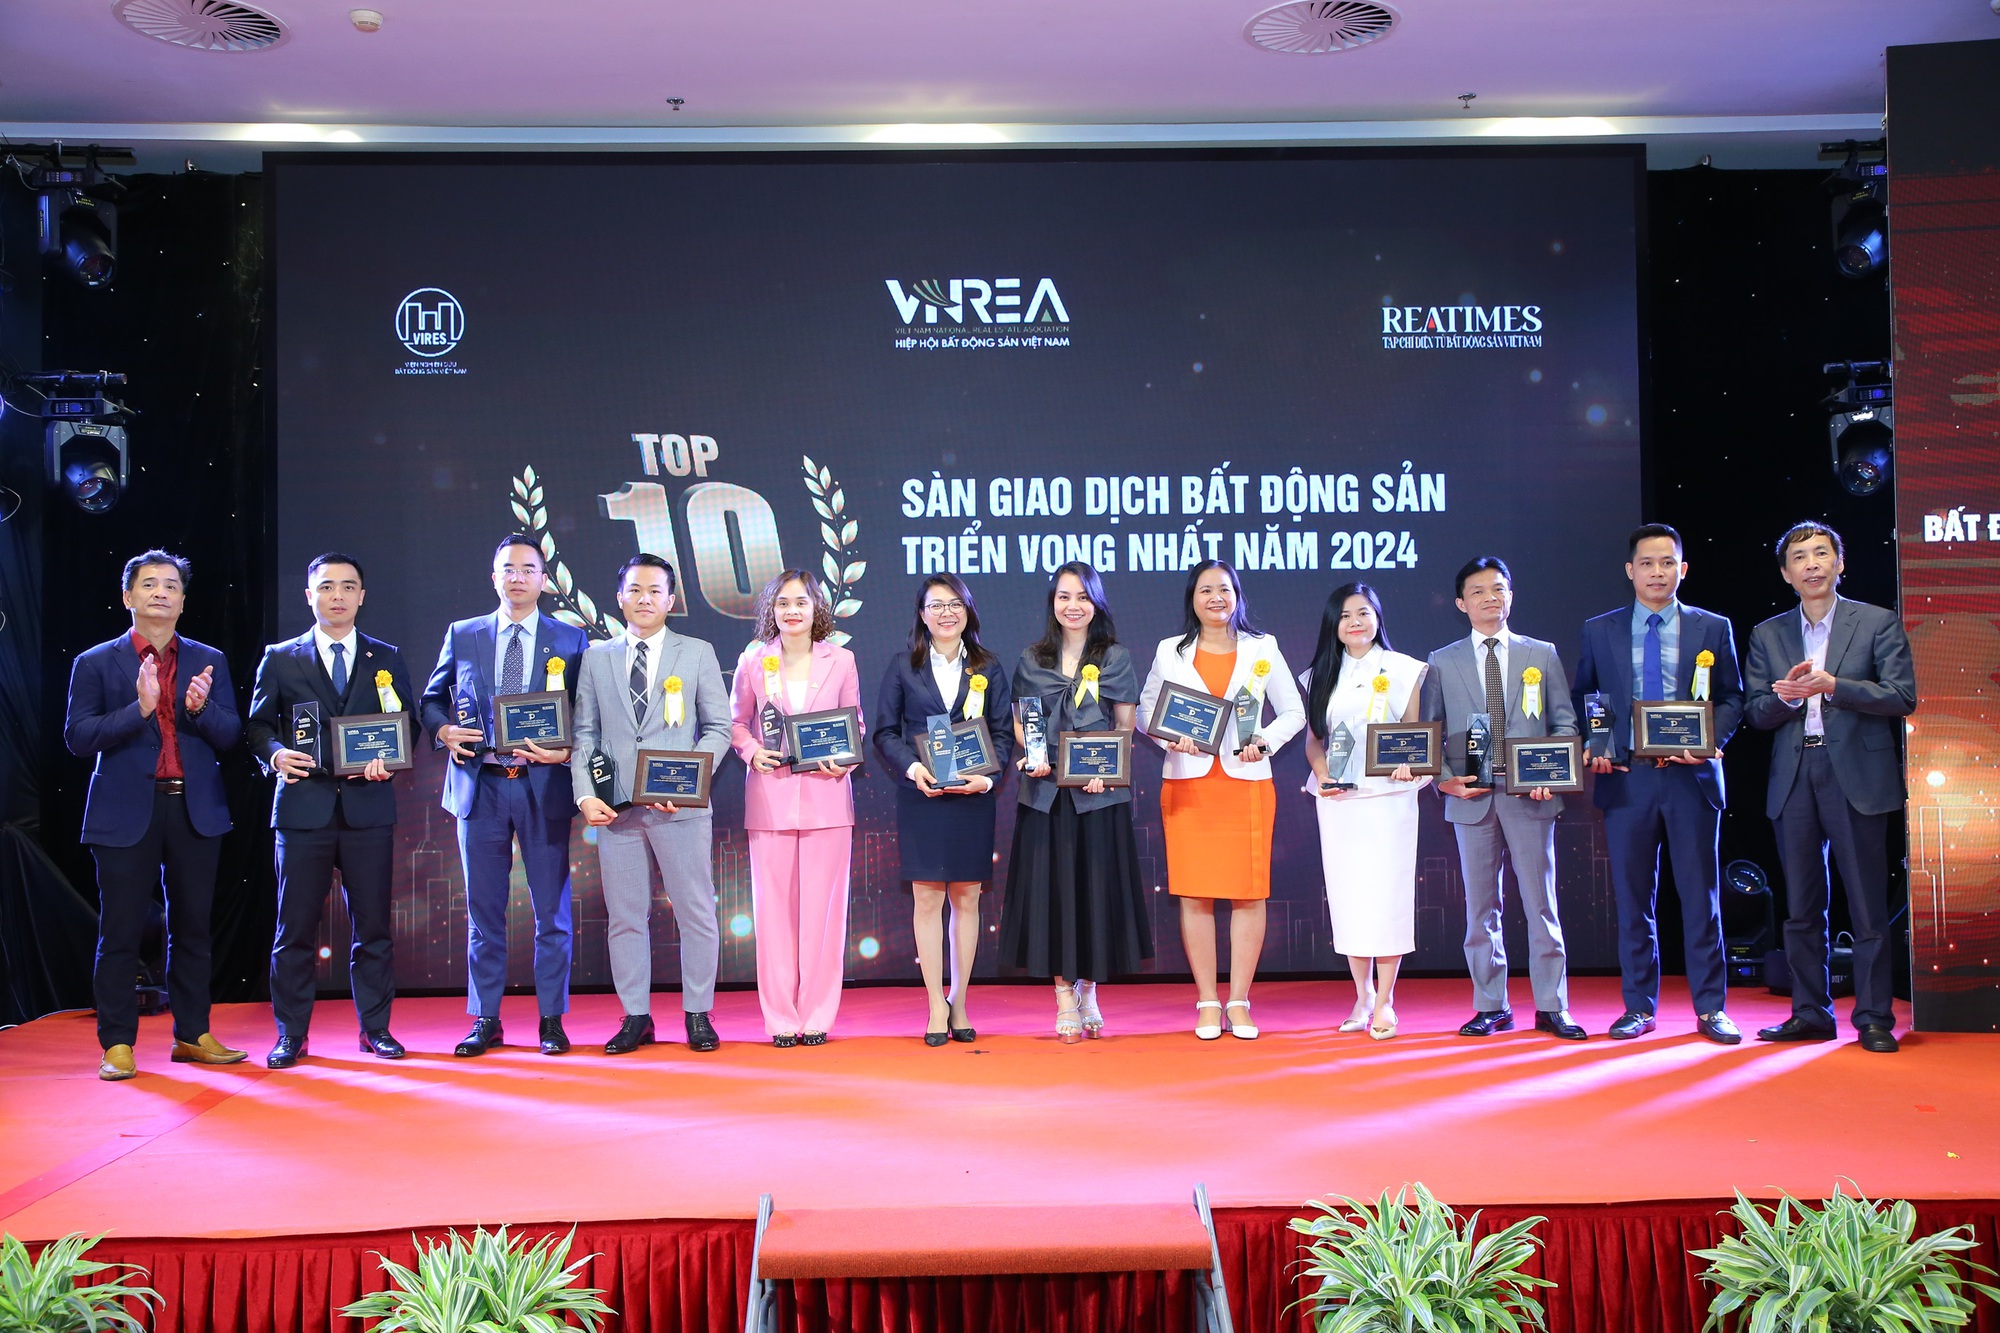 

Sao Việt thuộc Top 10 sàn giao dịch bất động sản triển vọng nhất năm 2024 - Ảnh 2.